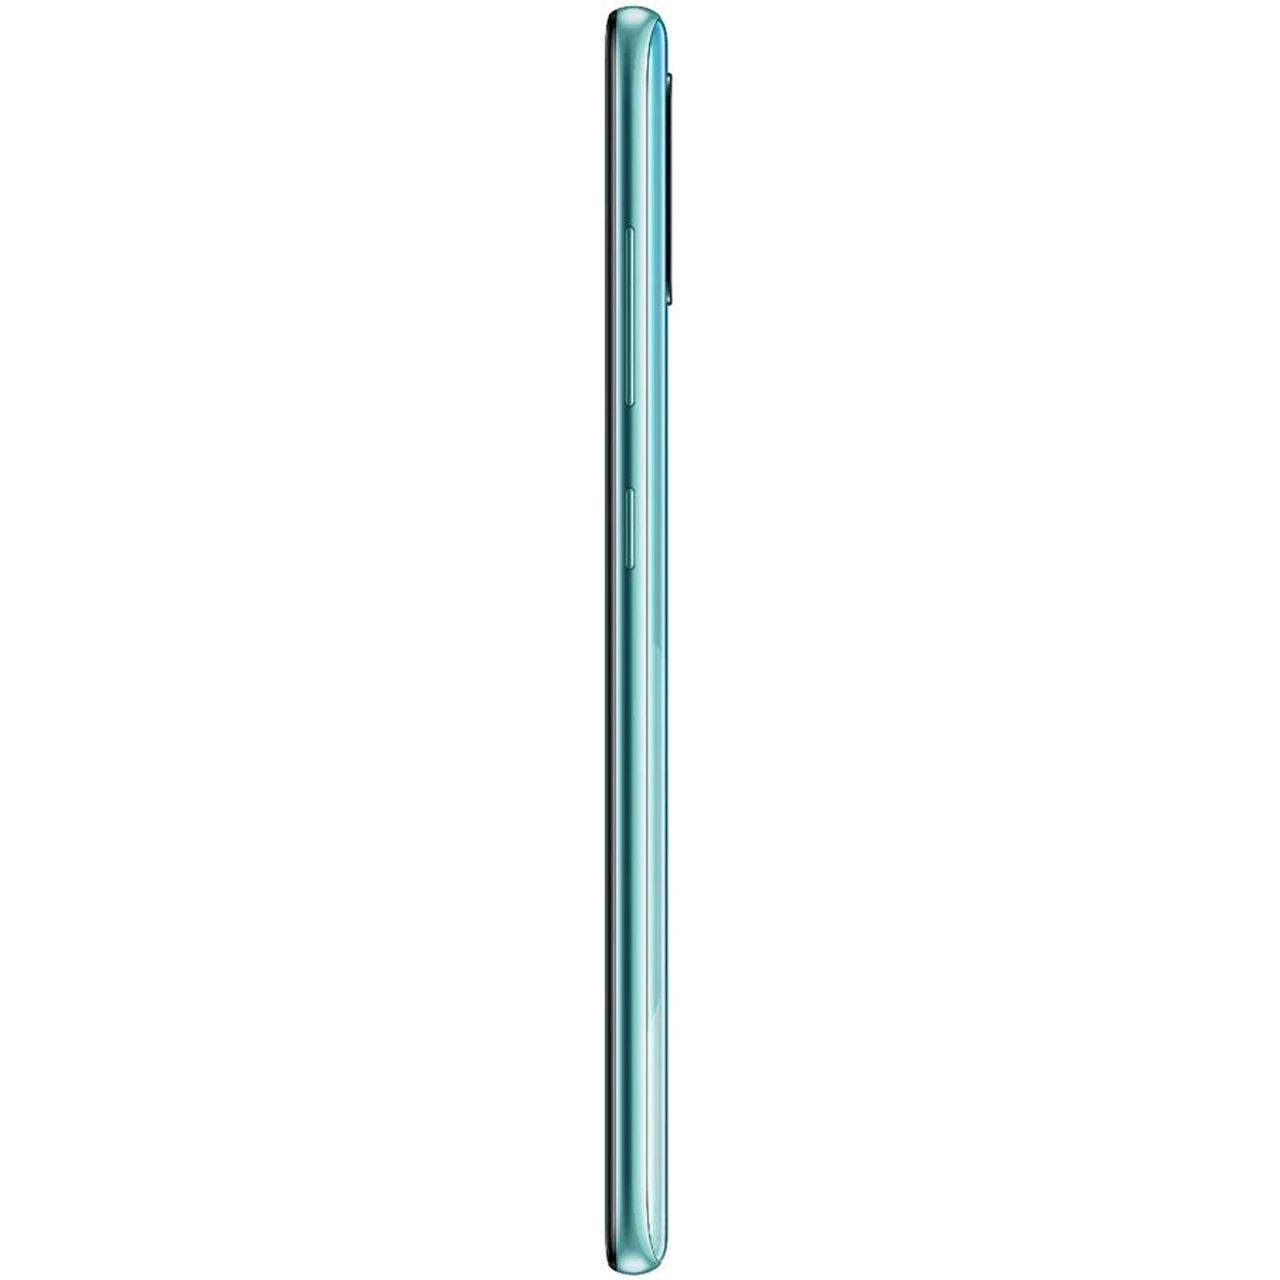 فروش نقدی و اقساطی گوشی موبایل سامسونگ مدل Galaxy A51 دوسیم کارت - ظرفیت 256گیگابایت - رم 8گیگابایت